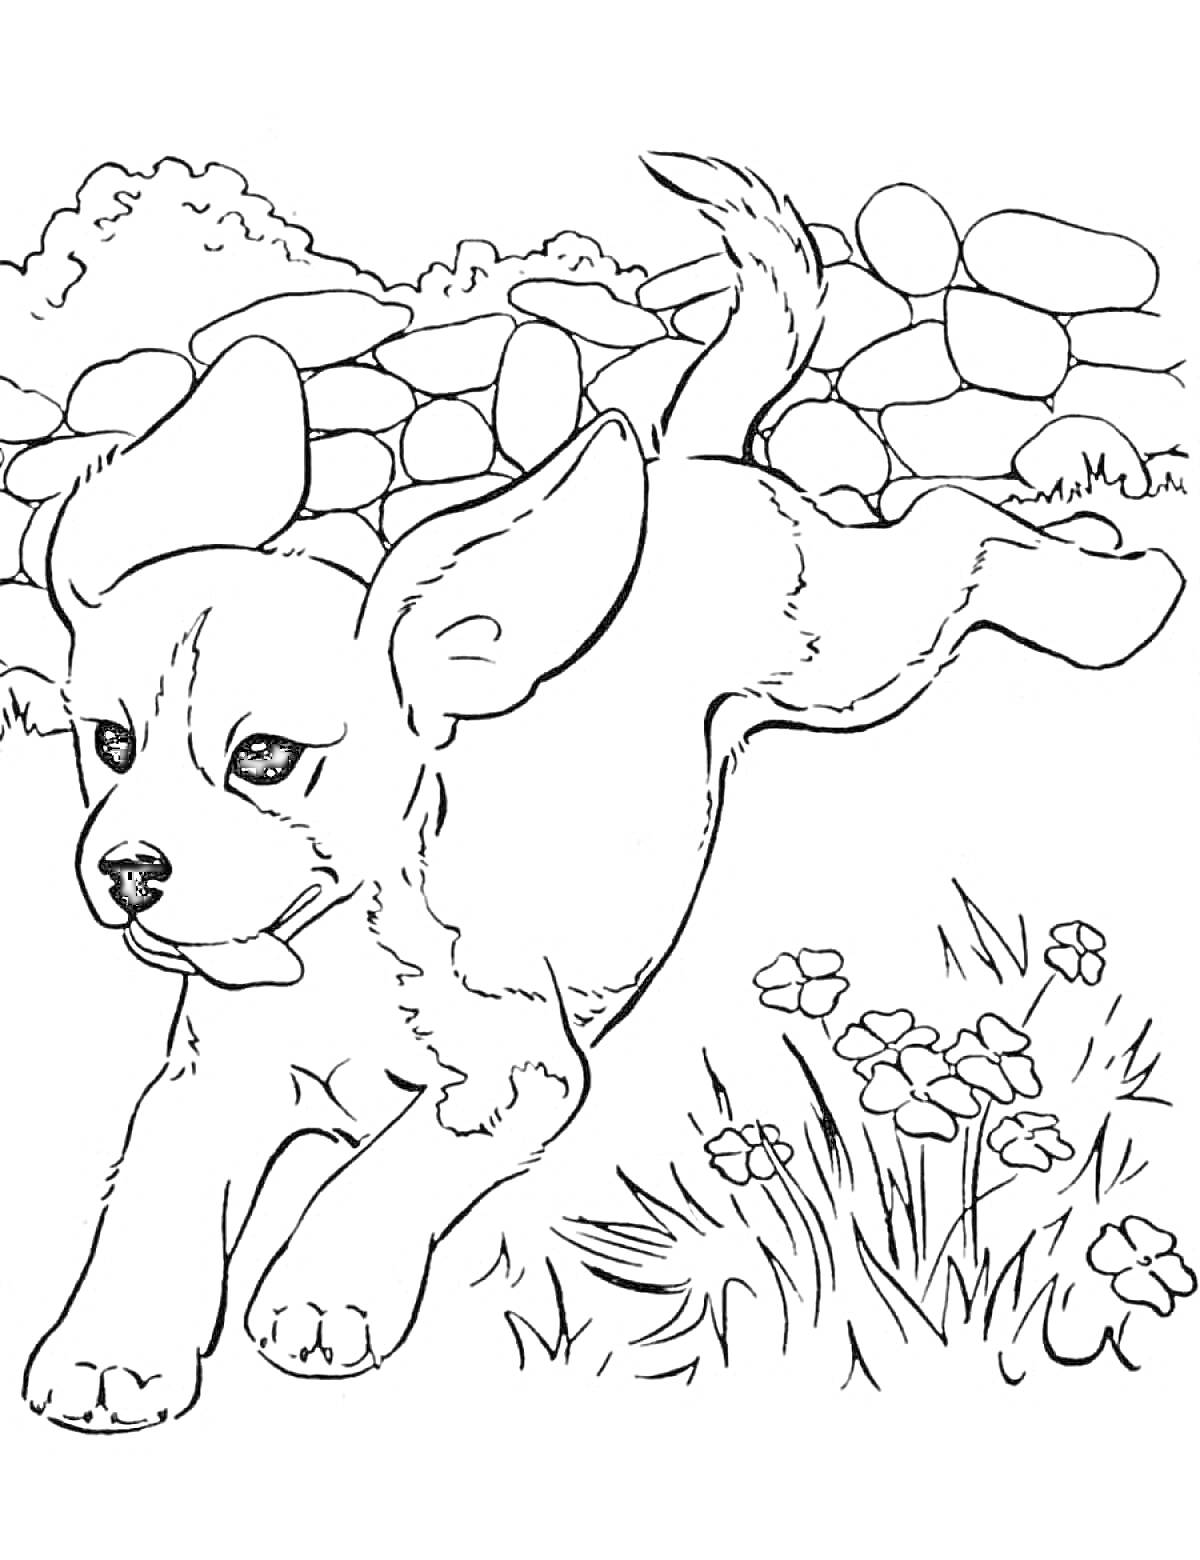 Раскраска Собака бежит на траве, окруженная цветами и виднеющимся каменным забором на заднем плане